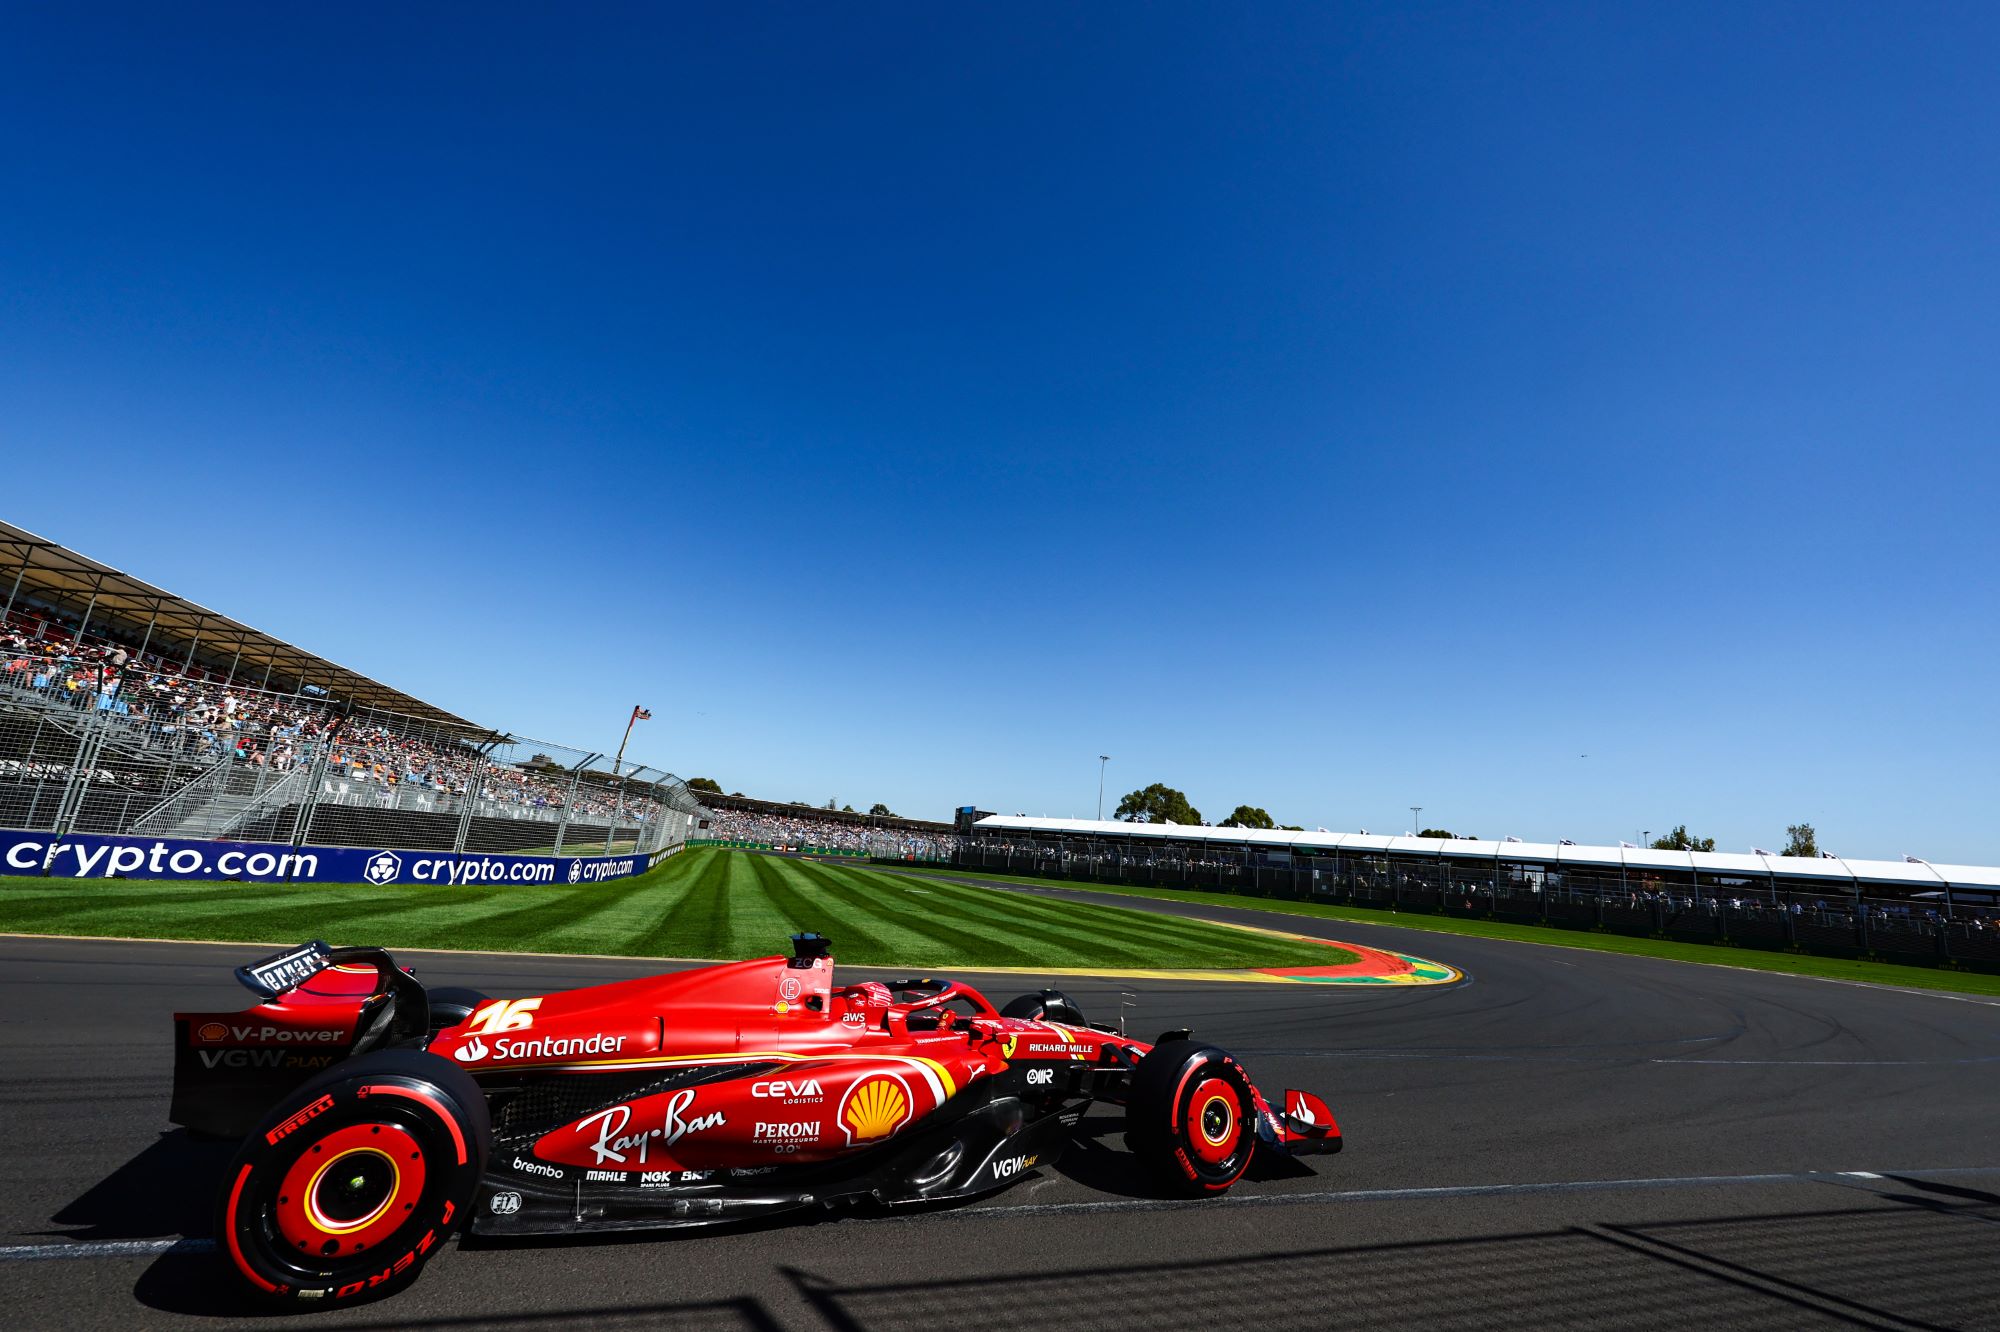 F1: Análise dos treinos livres na Austrália revela Ferrari com chance de pole e vitória